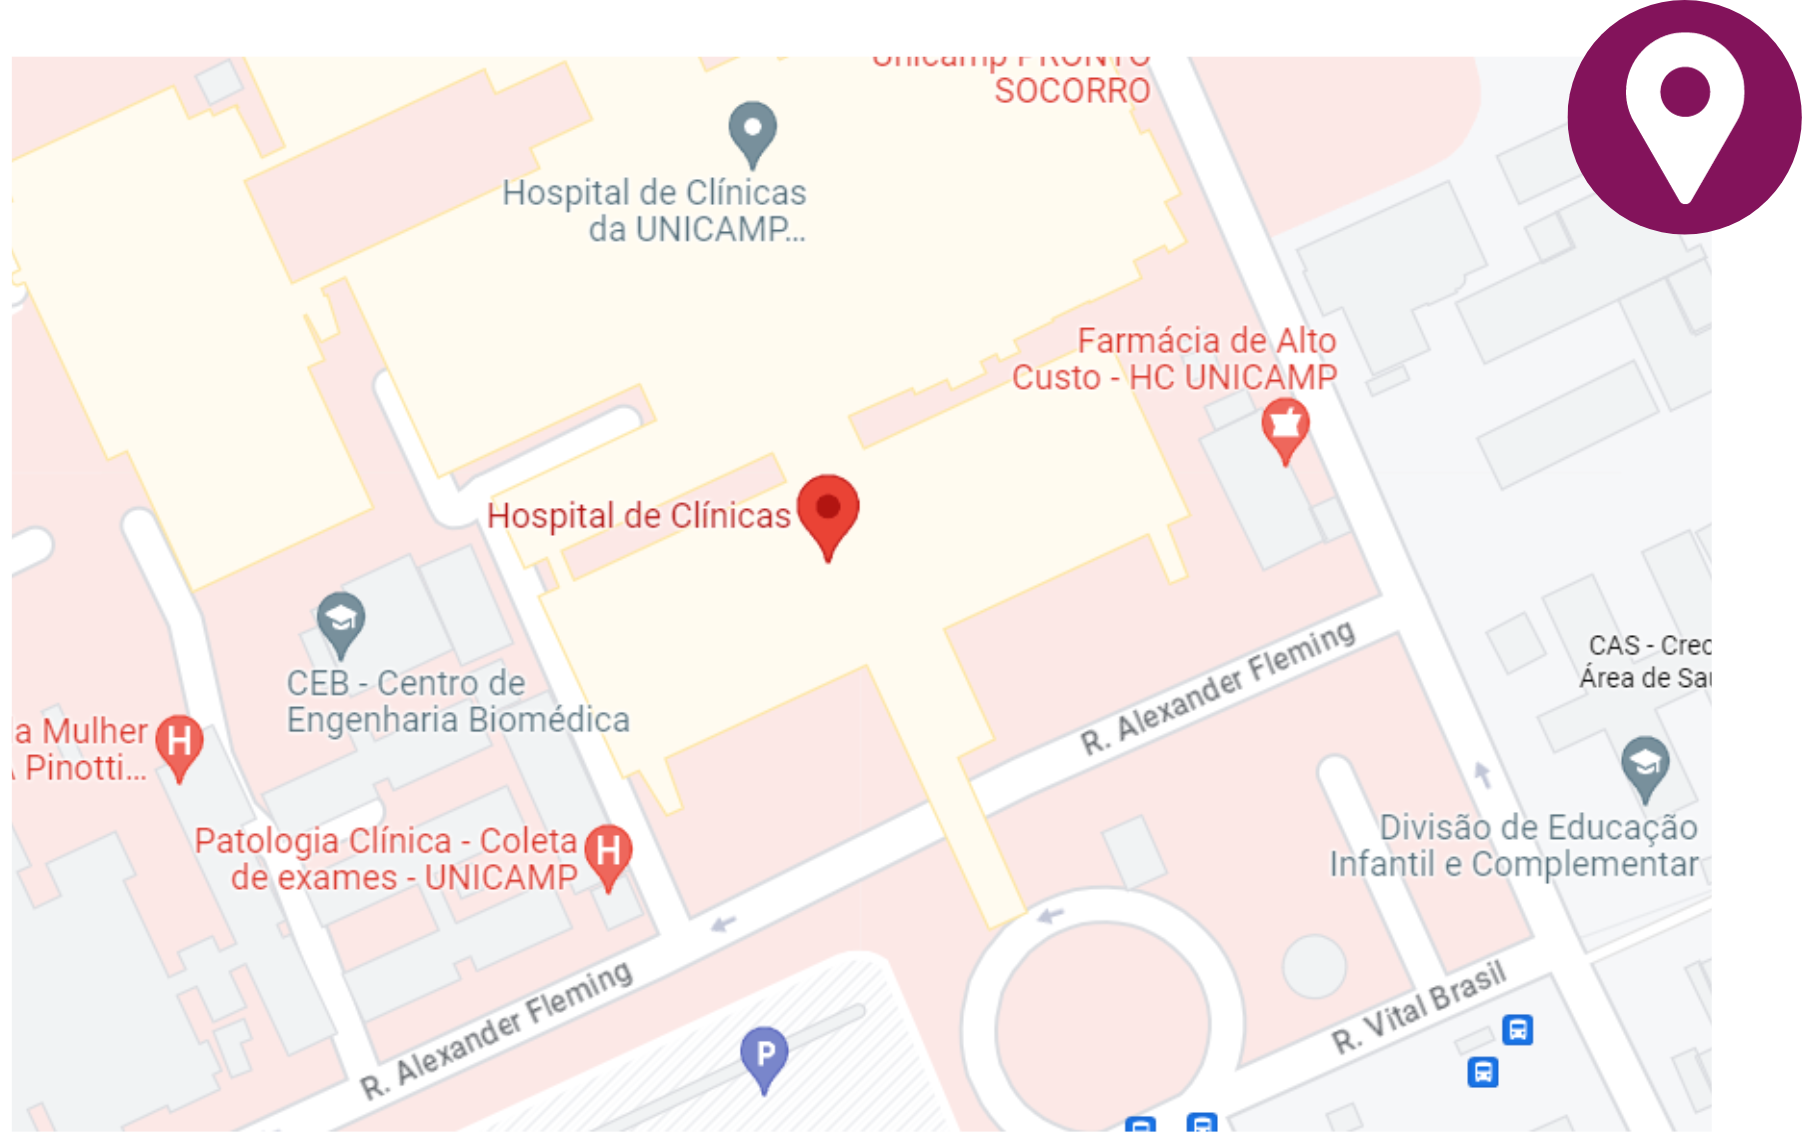 Hospital de Clínicas da UniCamp